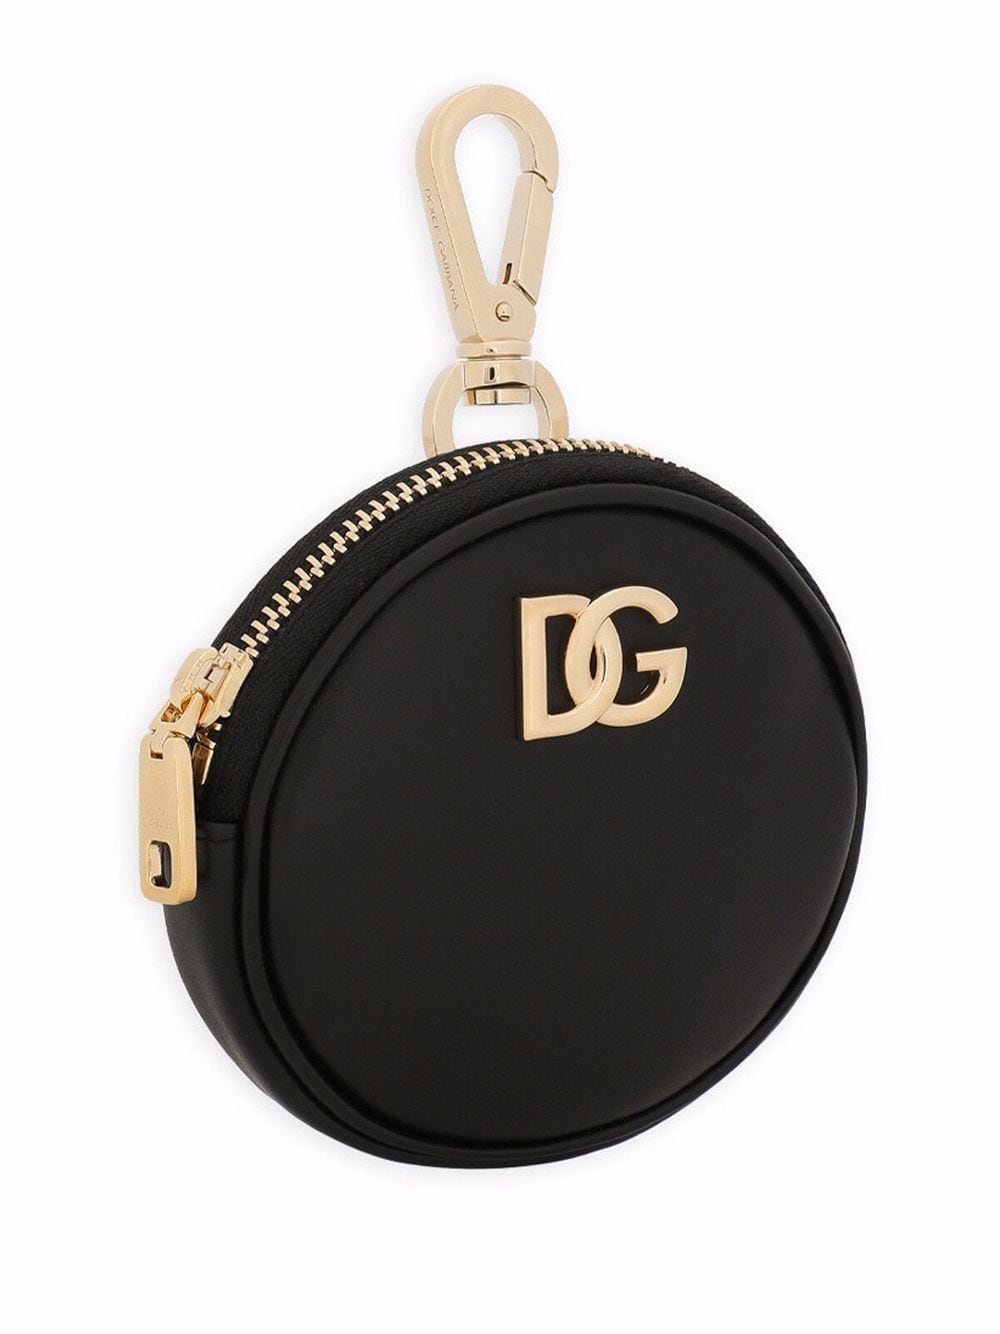 фото Dolce & gabbana кошелек с логотипом dg